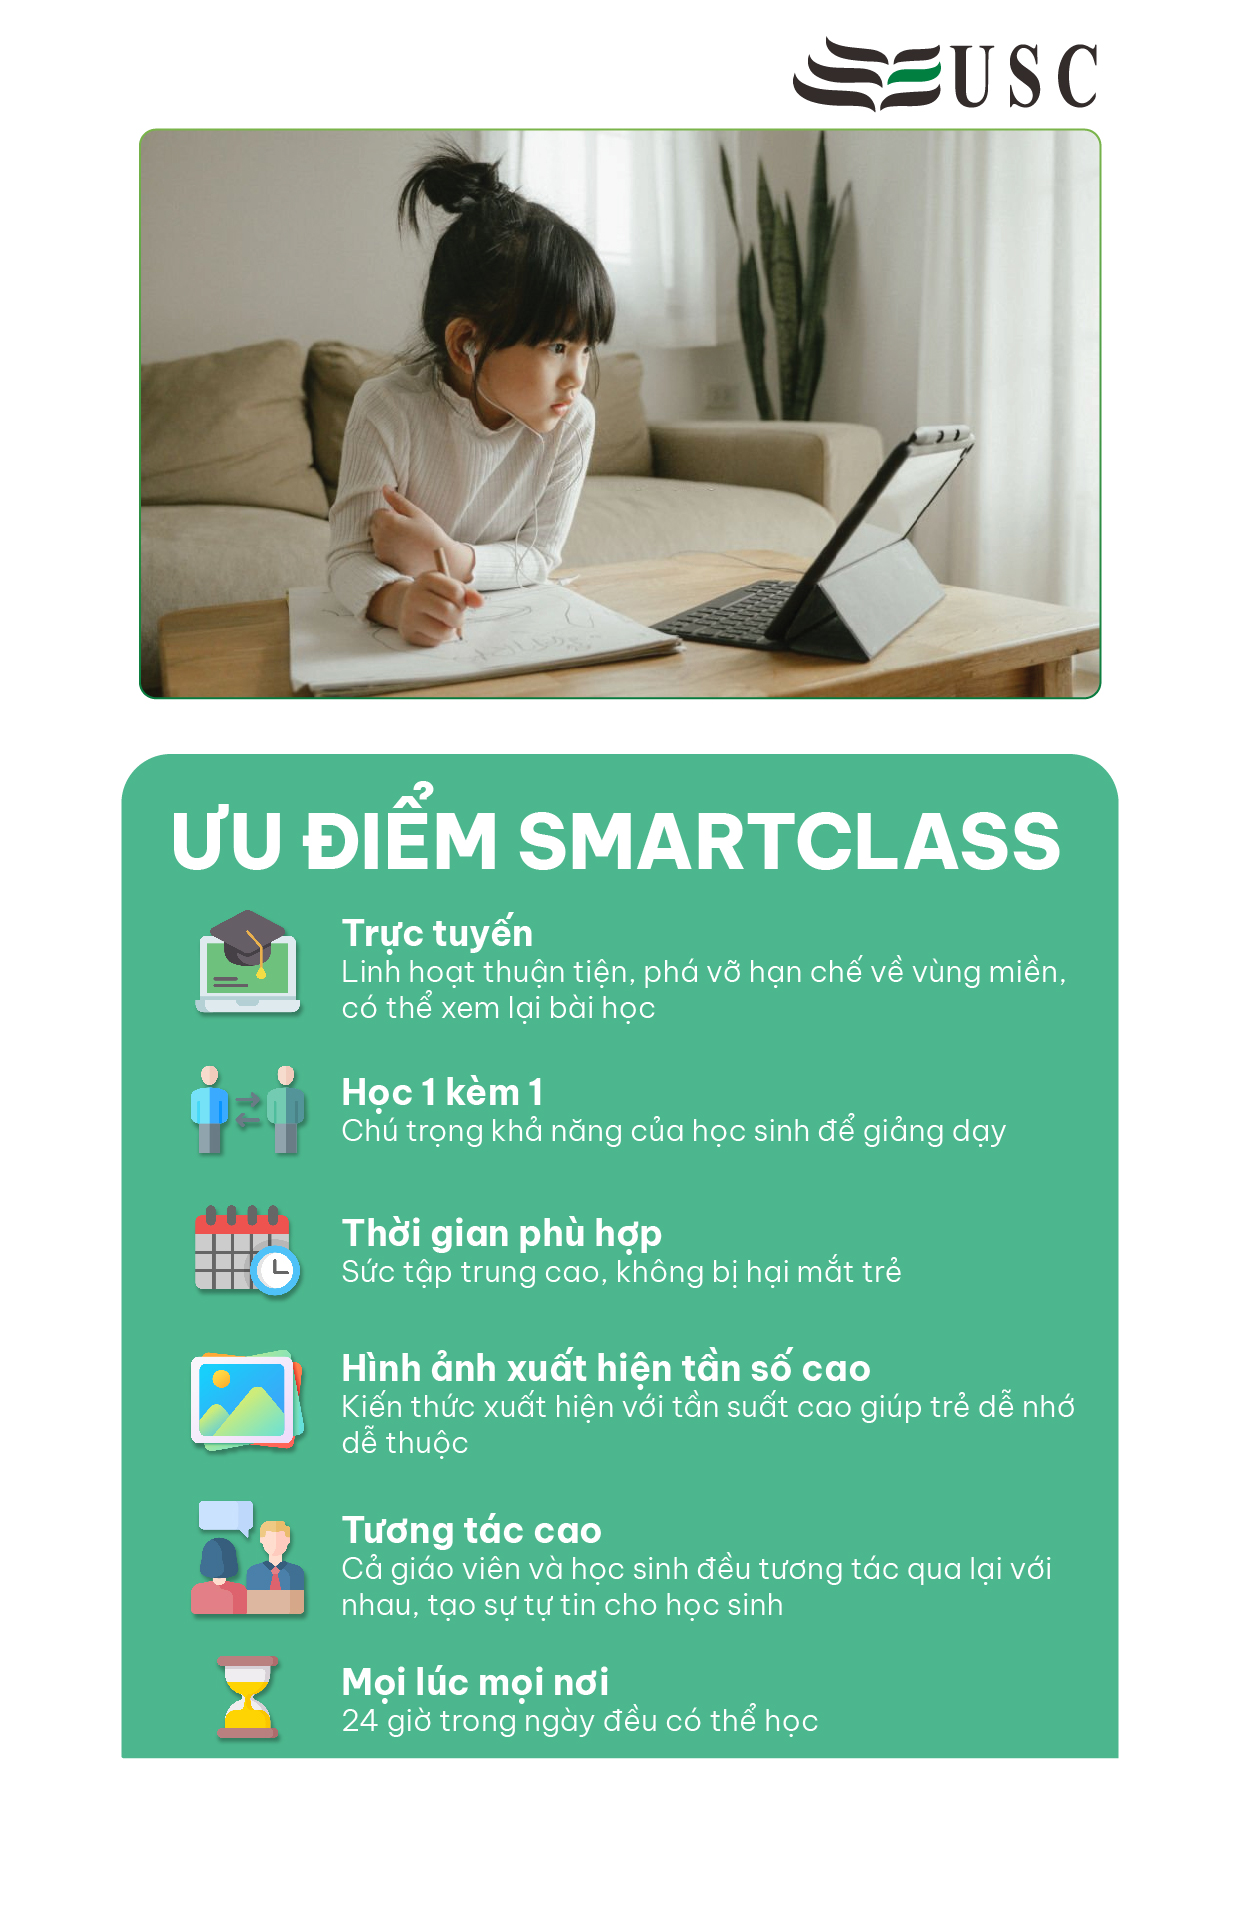 Ưu điểm SmartClass